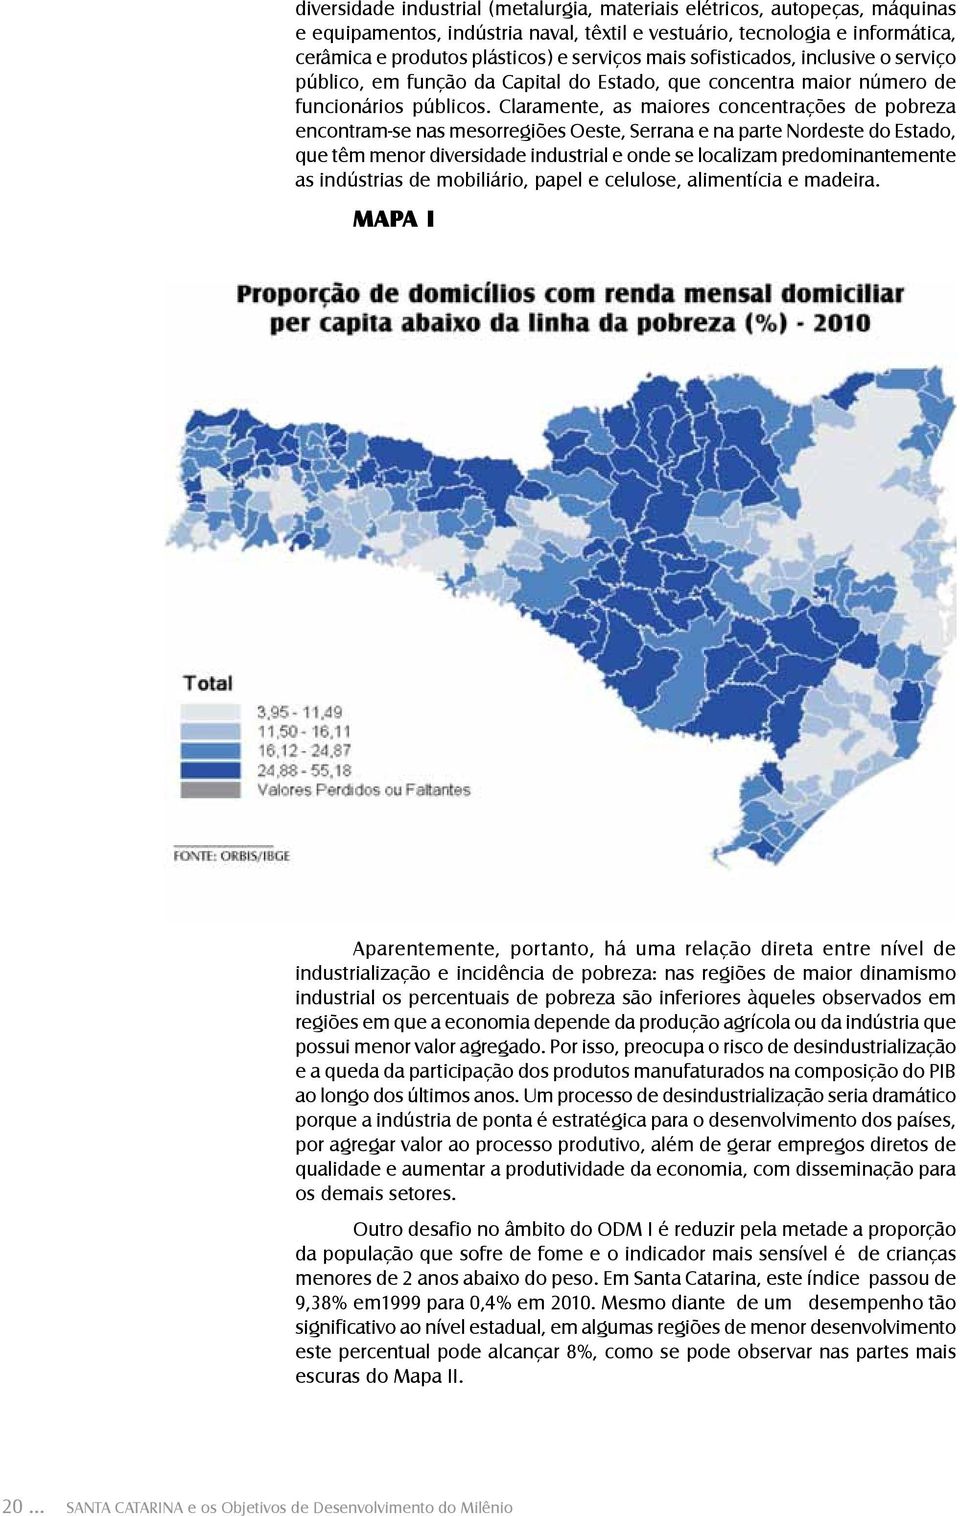 Claramente, as maiores concentrações de pobreza encontram-se nas mesorregiões Oeste, Serrana e na parte Nordeste do Estado, que têm menor diversidade industrial e onde se localizam predominantemente